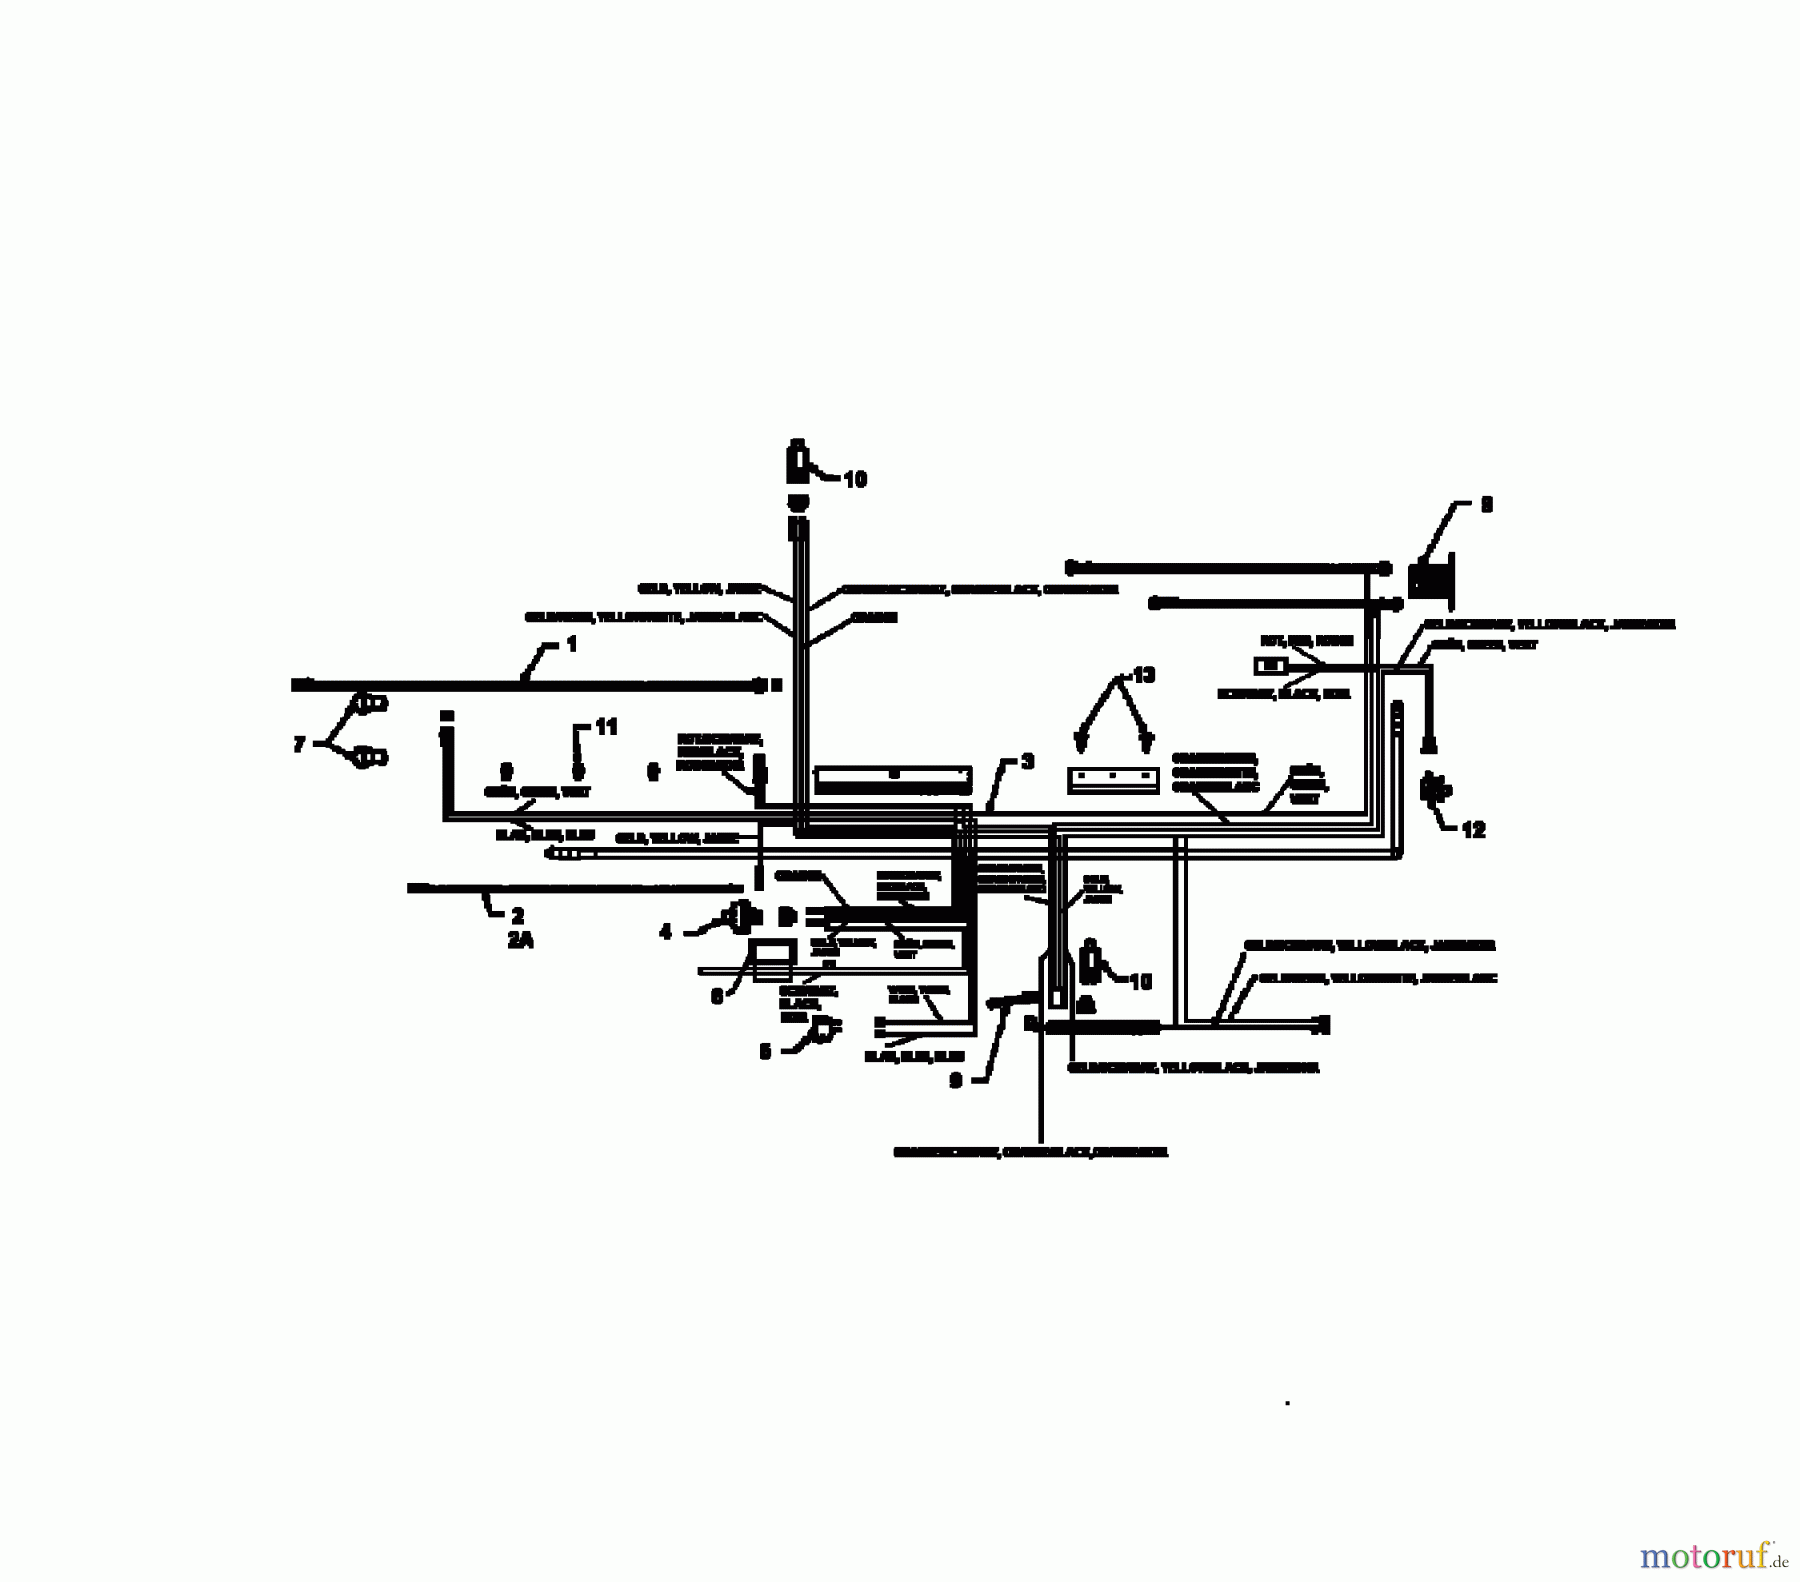  Lawnflite Rasentraktoren 906 13XO765N611  (1997) Schaltplan Vanguard